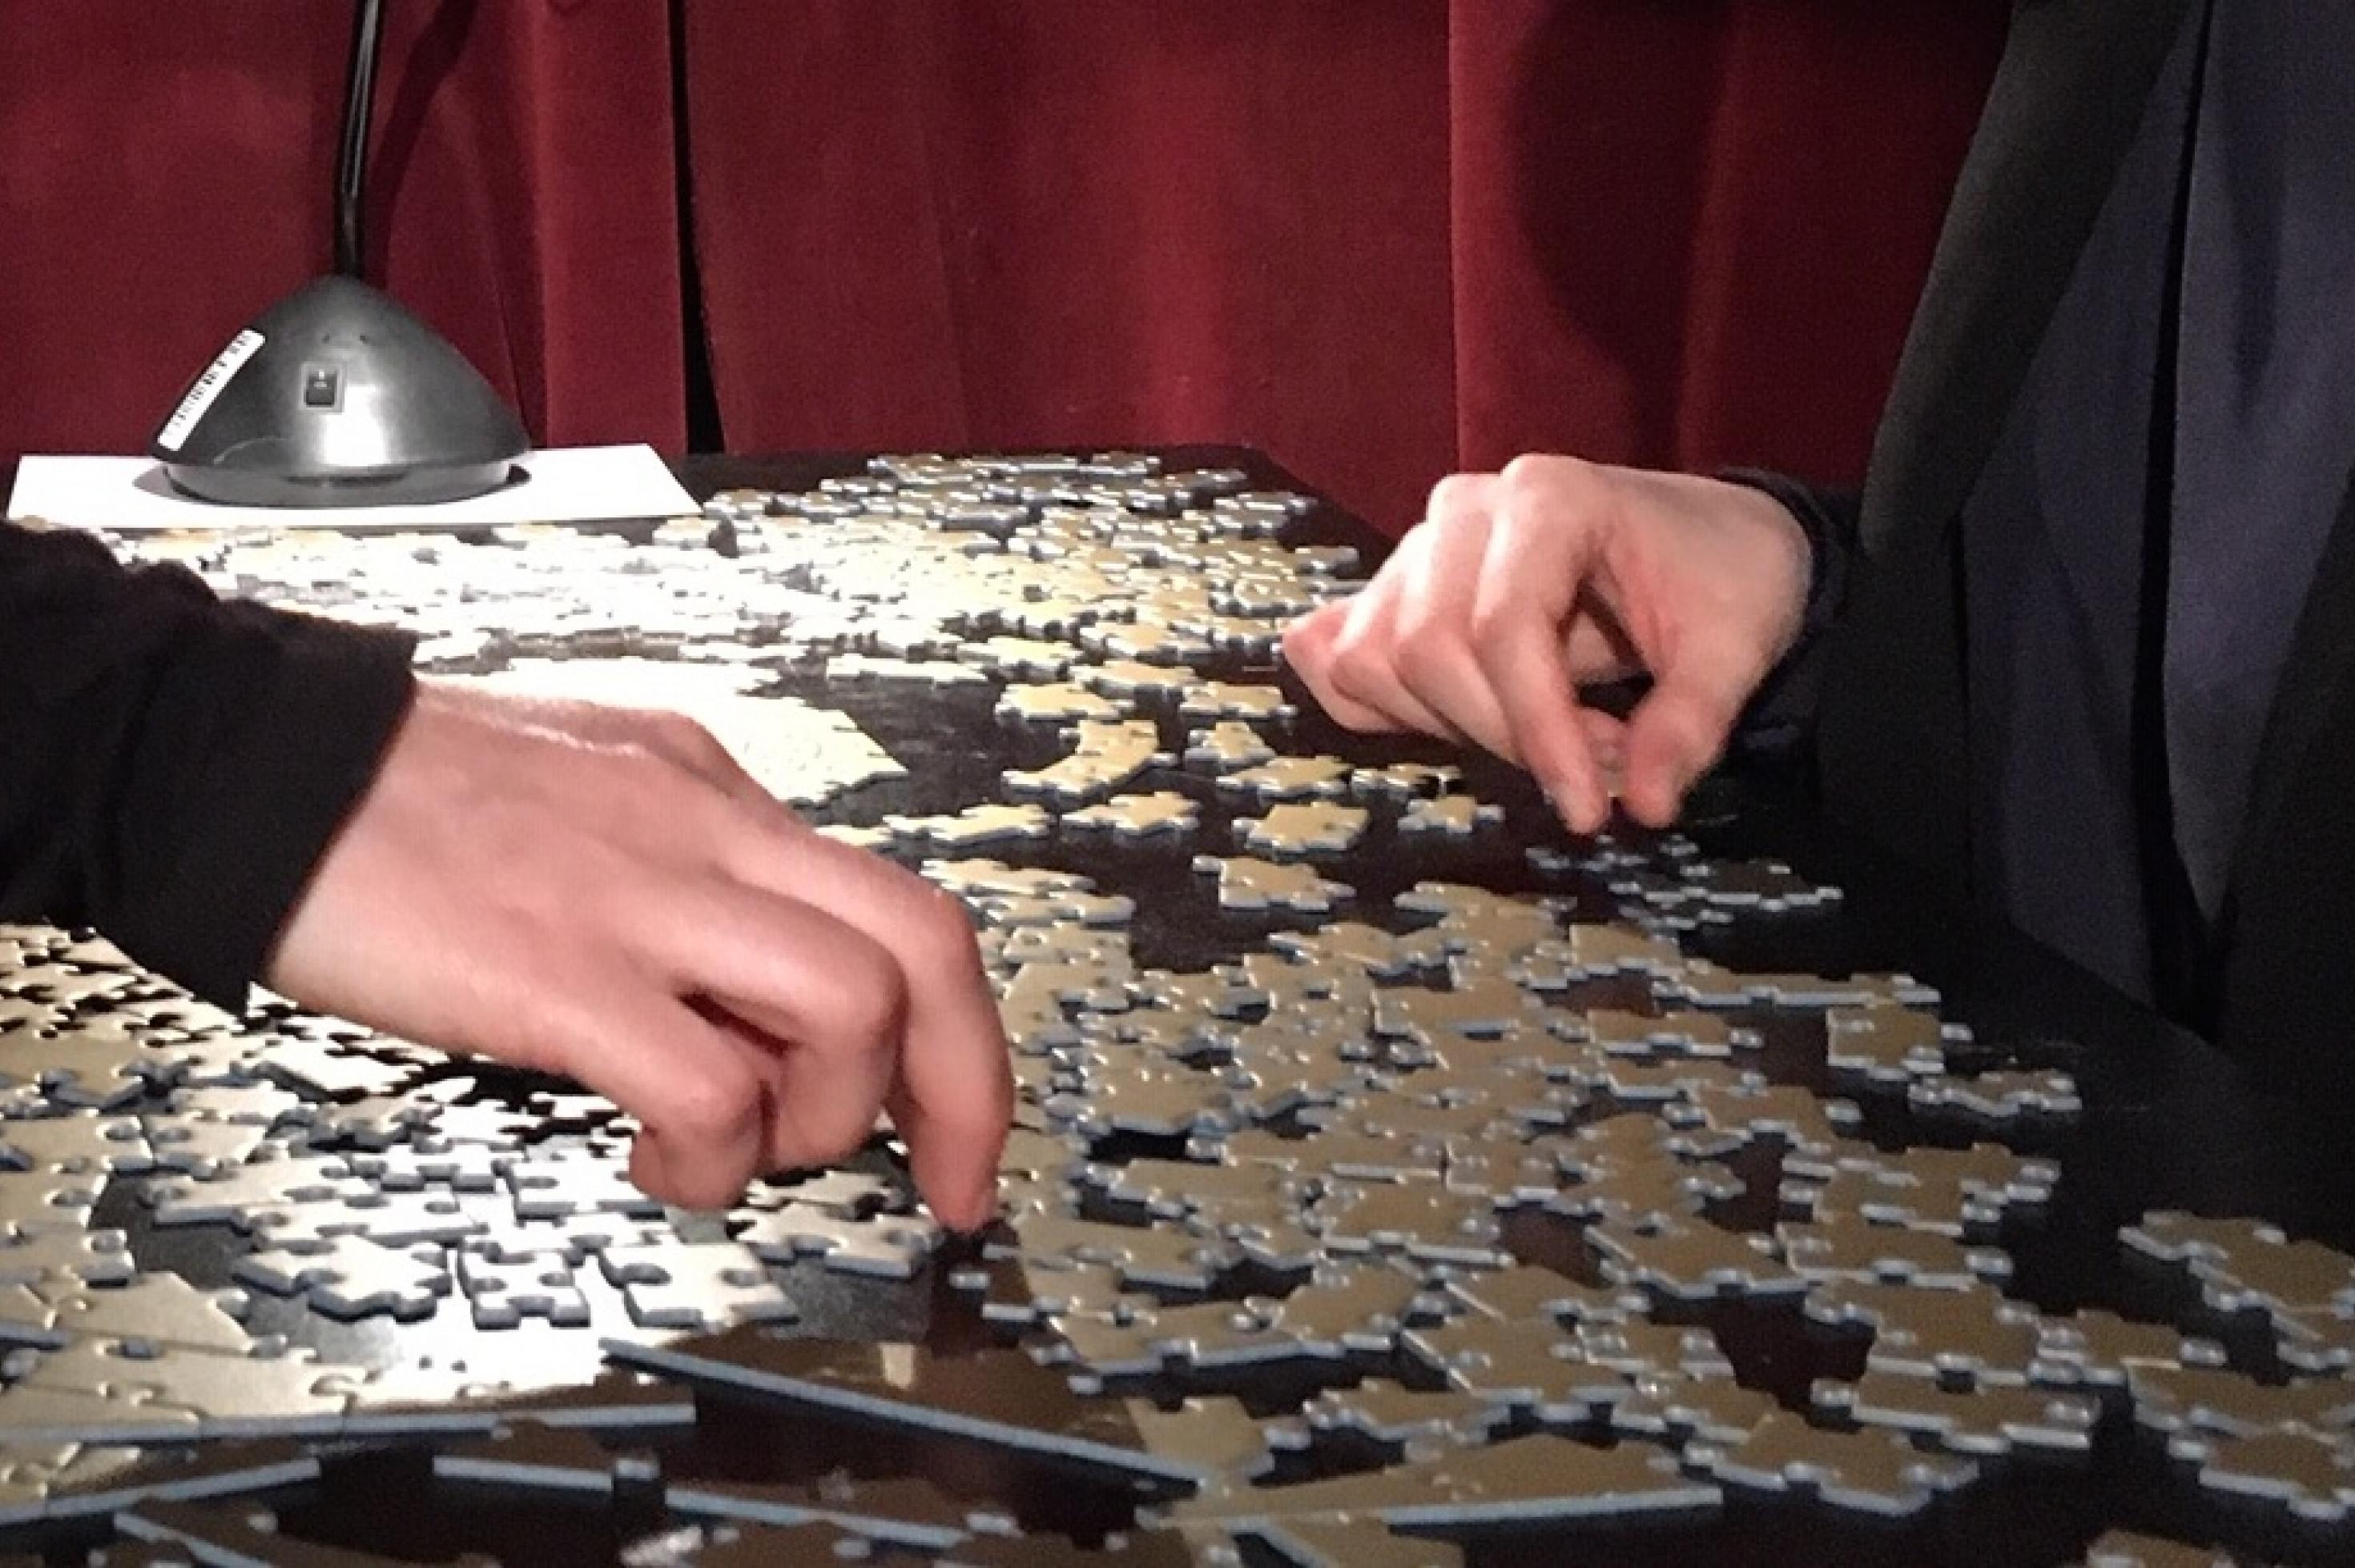 Zwei Menschen sitzen sich gegenüber und puzzlen gemeinsam. Man sieht nur ihre Hände. Die einfarbig goldenen Puzzleteile unterscheiden sich nur durch ihre Form.